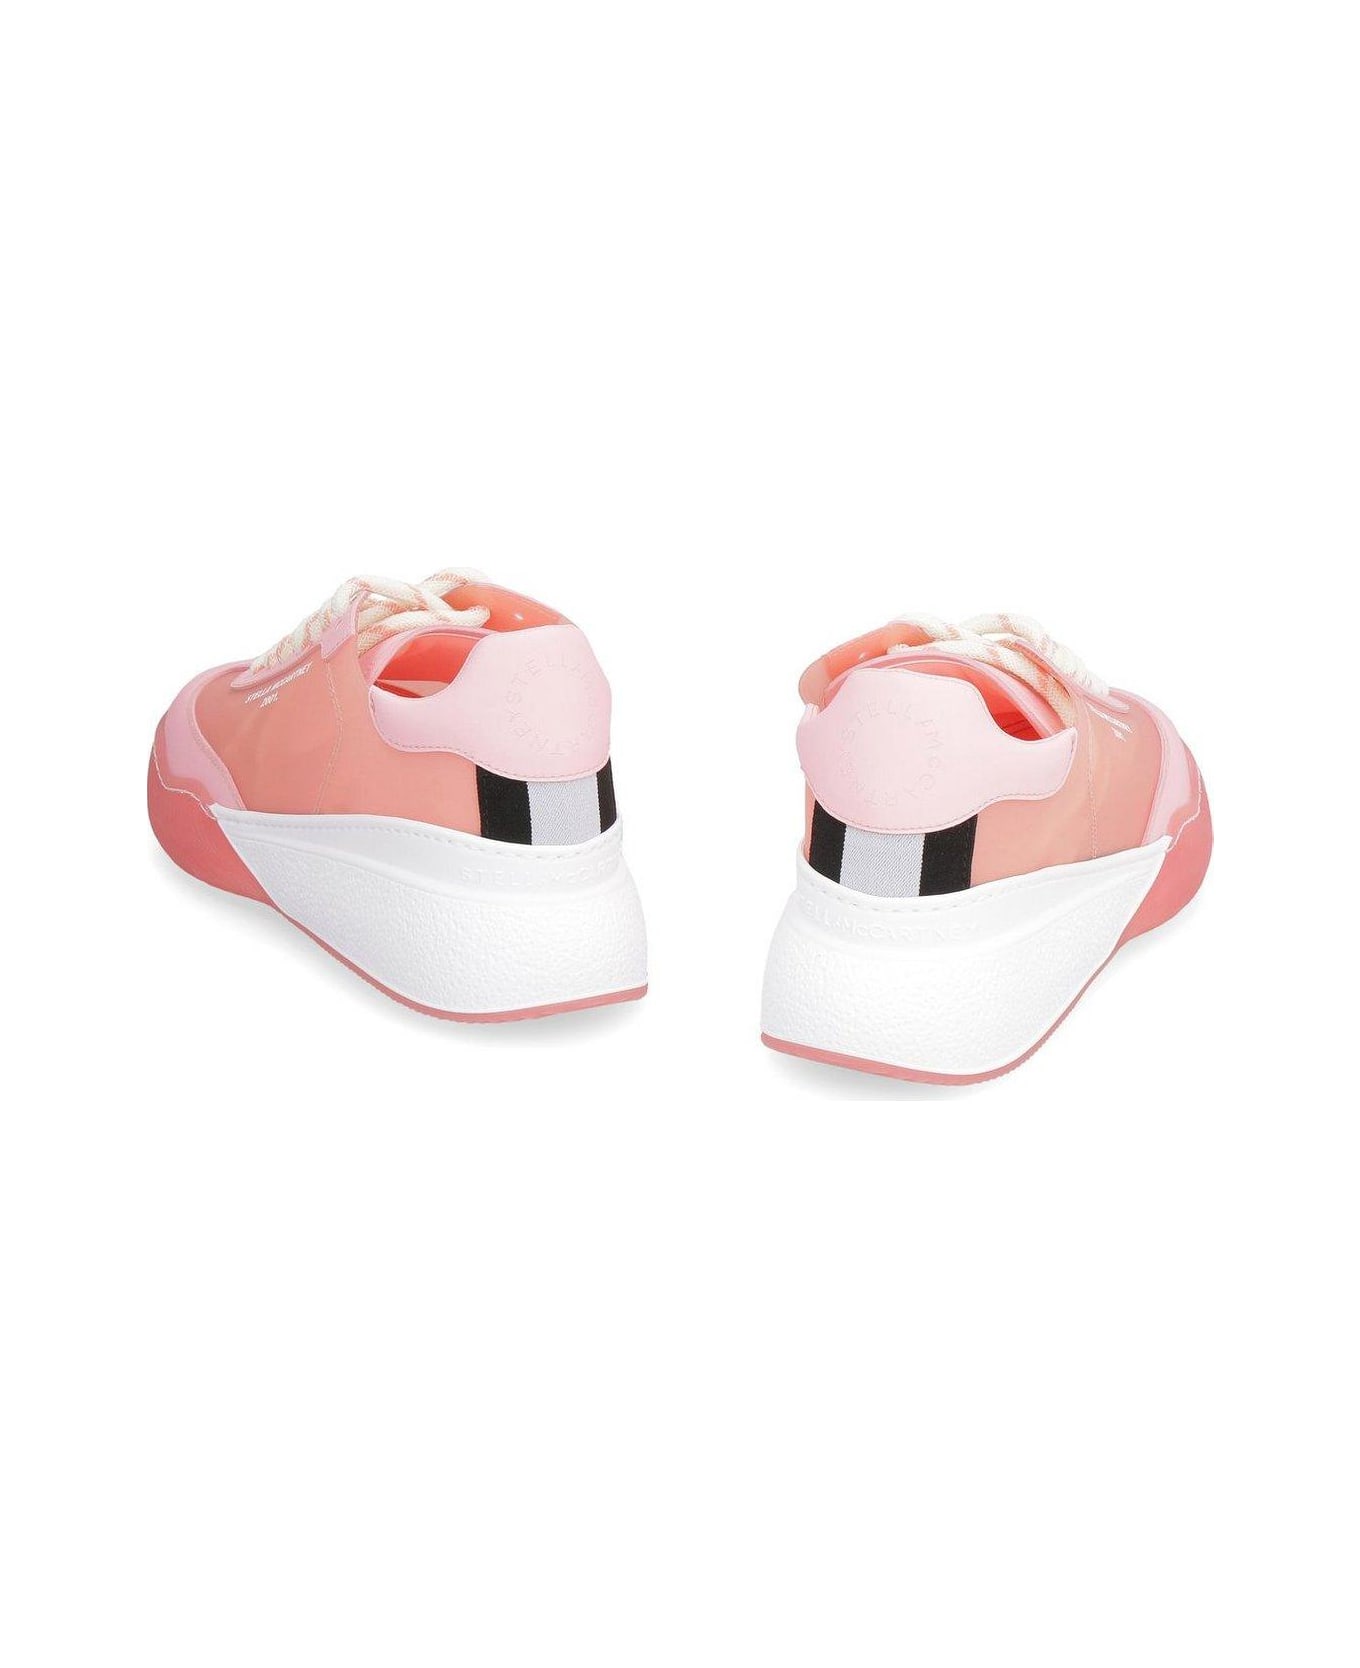 Stella McCartney Loop Lace-up Sneakers - Pink